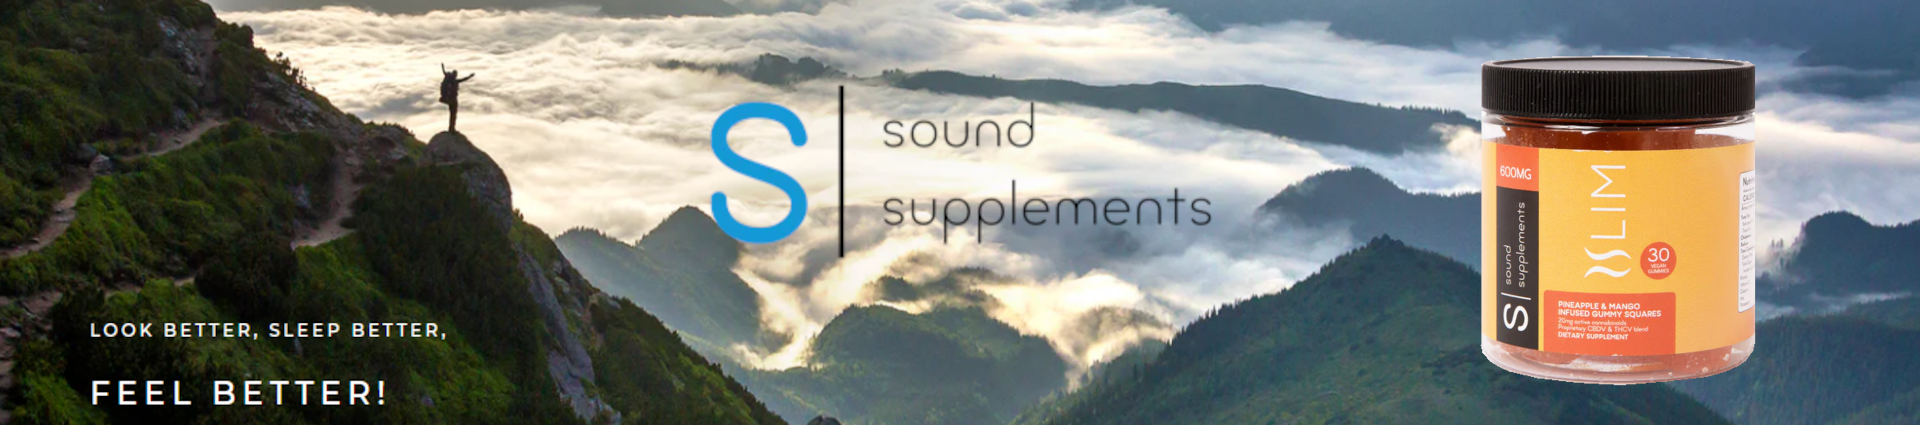 Sound Supplements